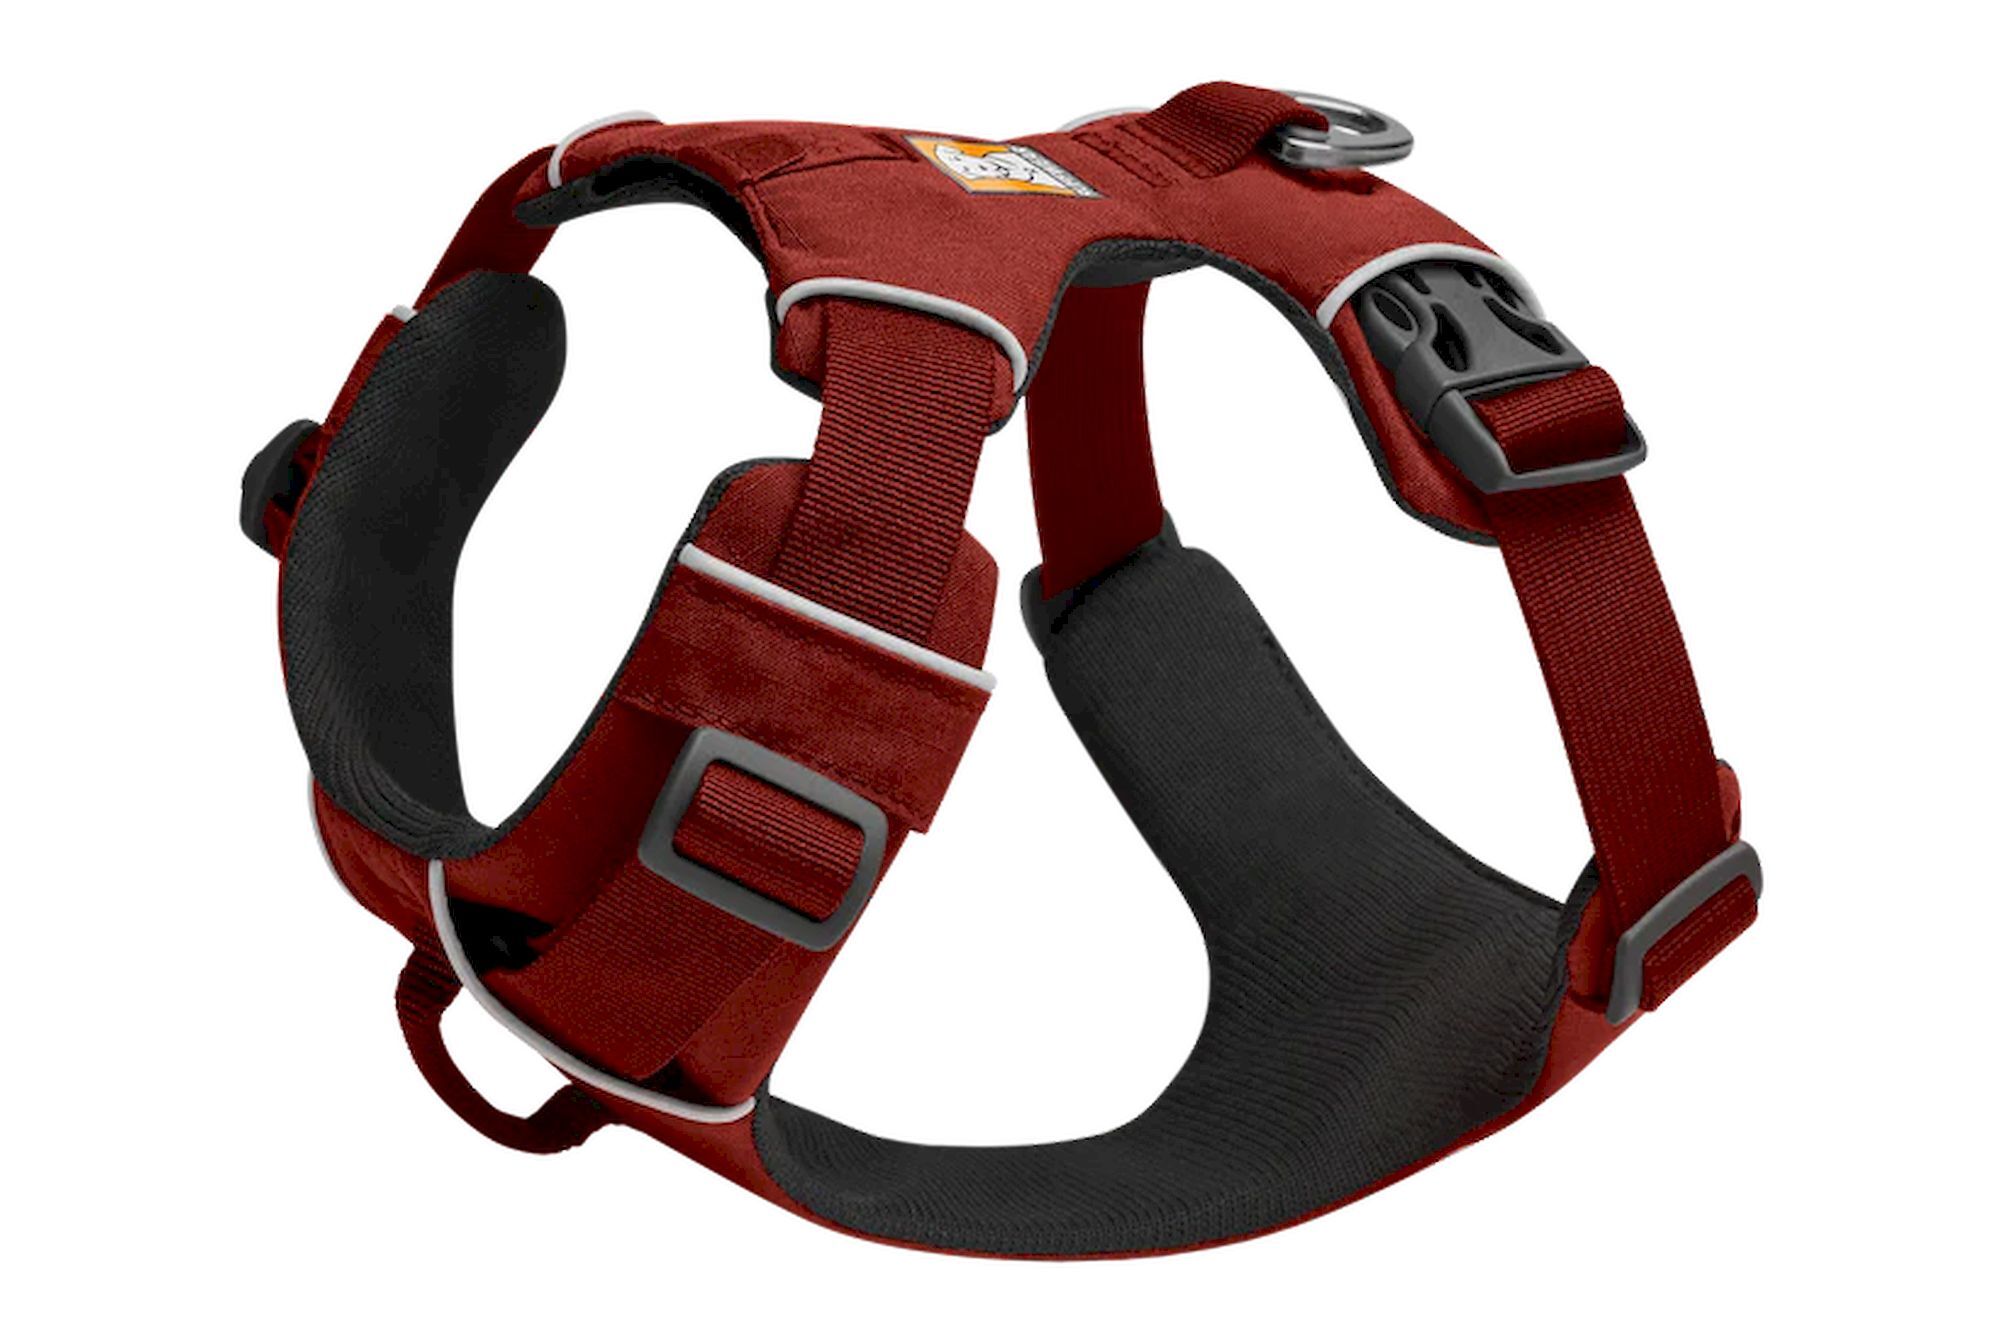 Ruffwear Front Range - Dog harness